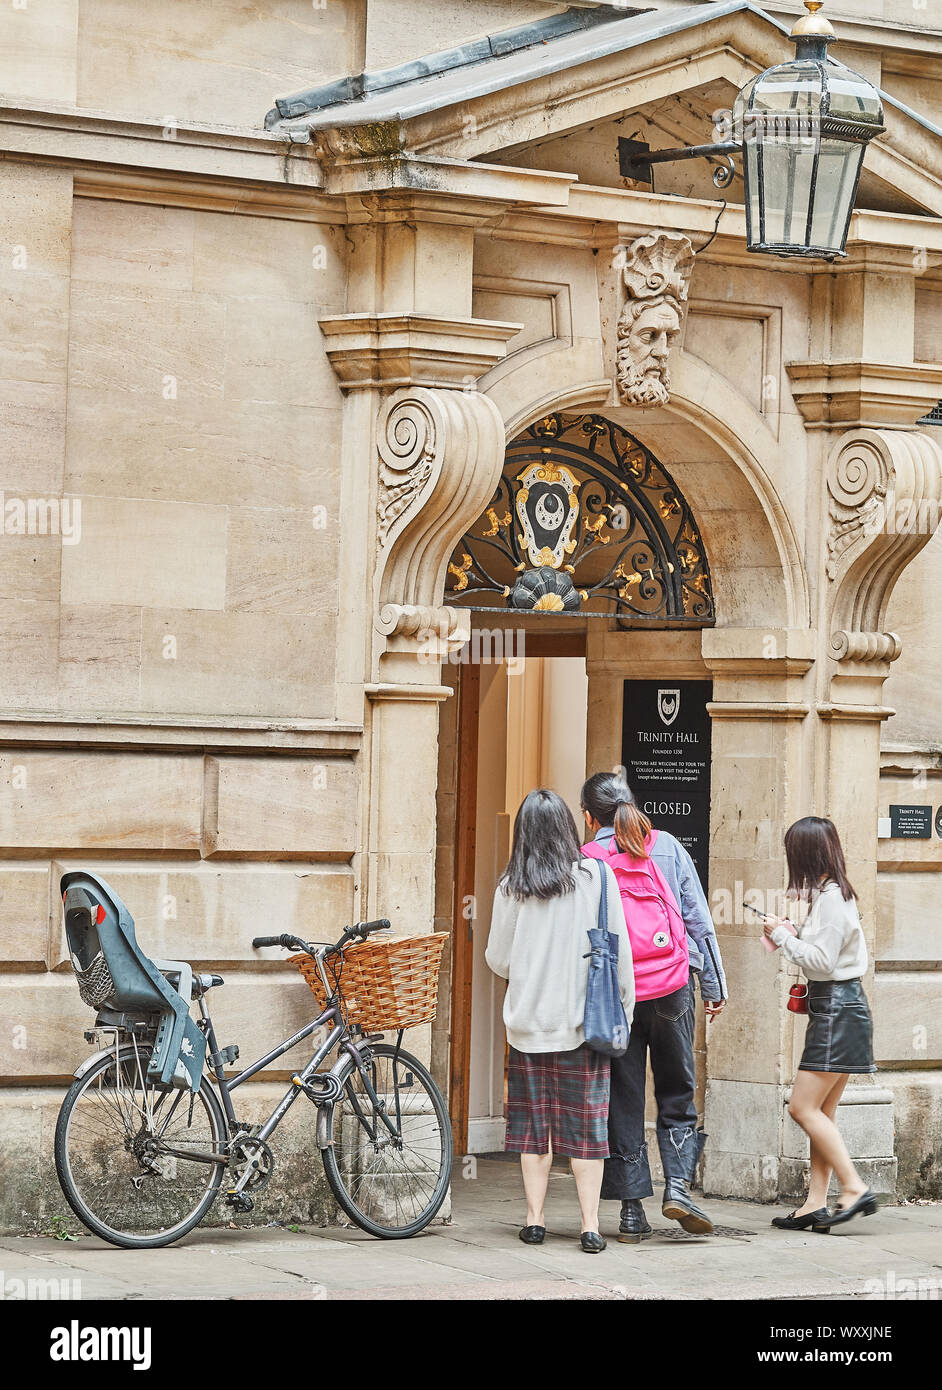 Un trio femminile di turisti guardano con cautela nell'ingresso della Trinità Hall dell'università di Cambridge, Inghilterra. Foto Stock